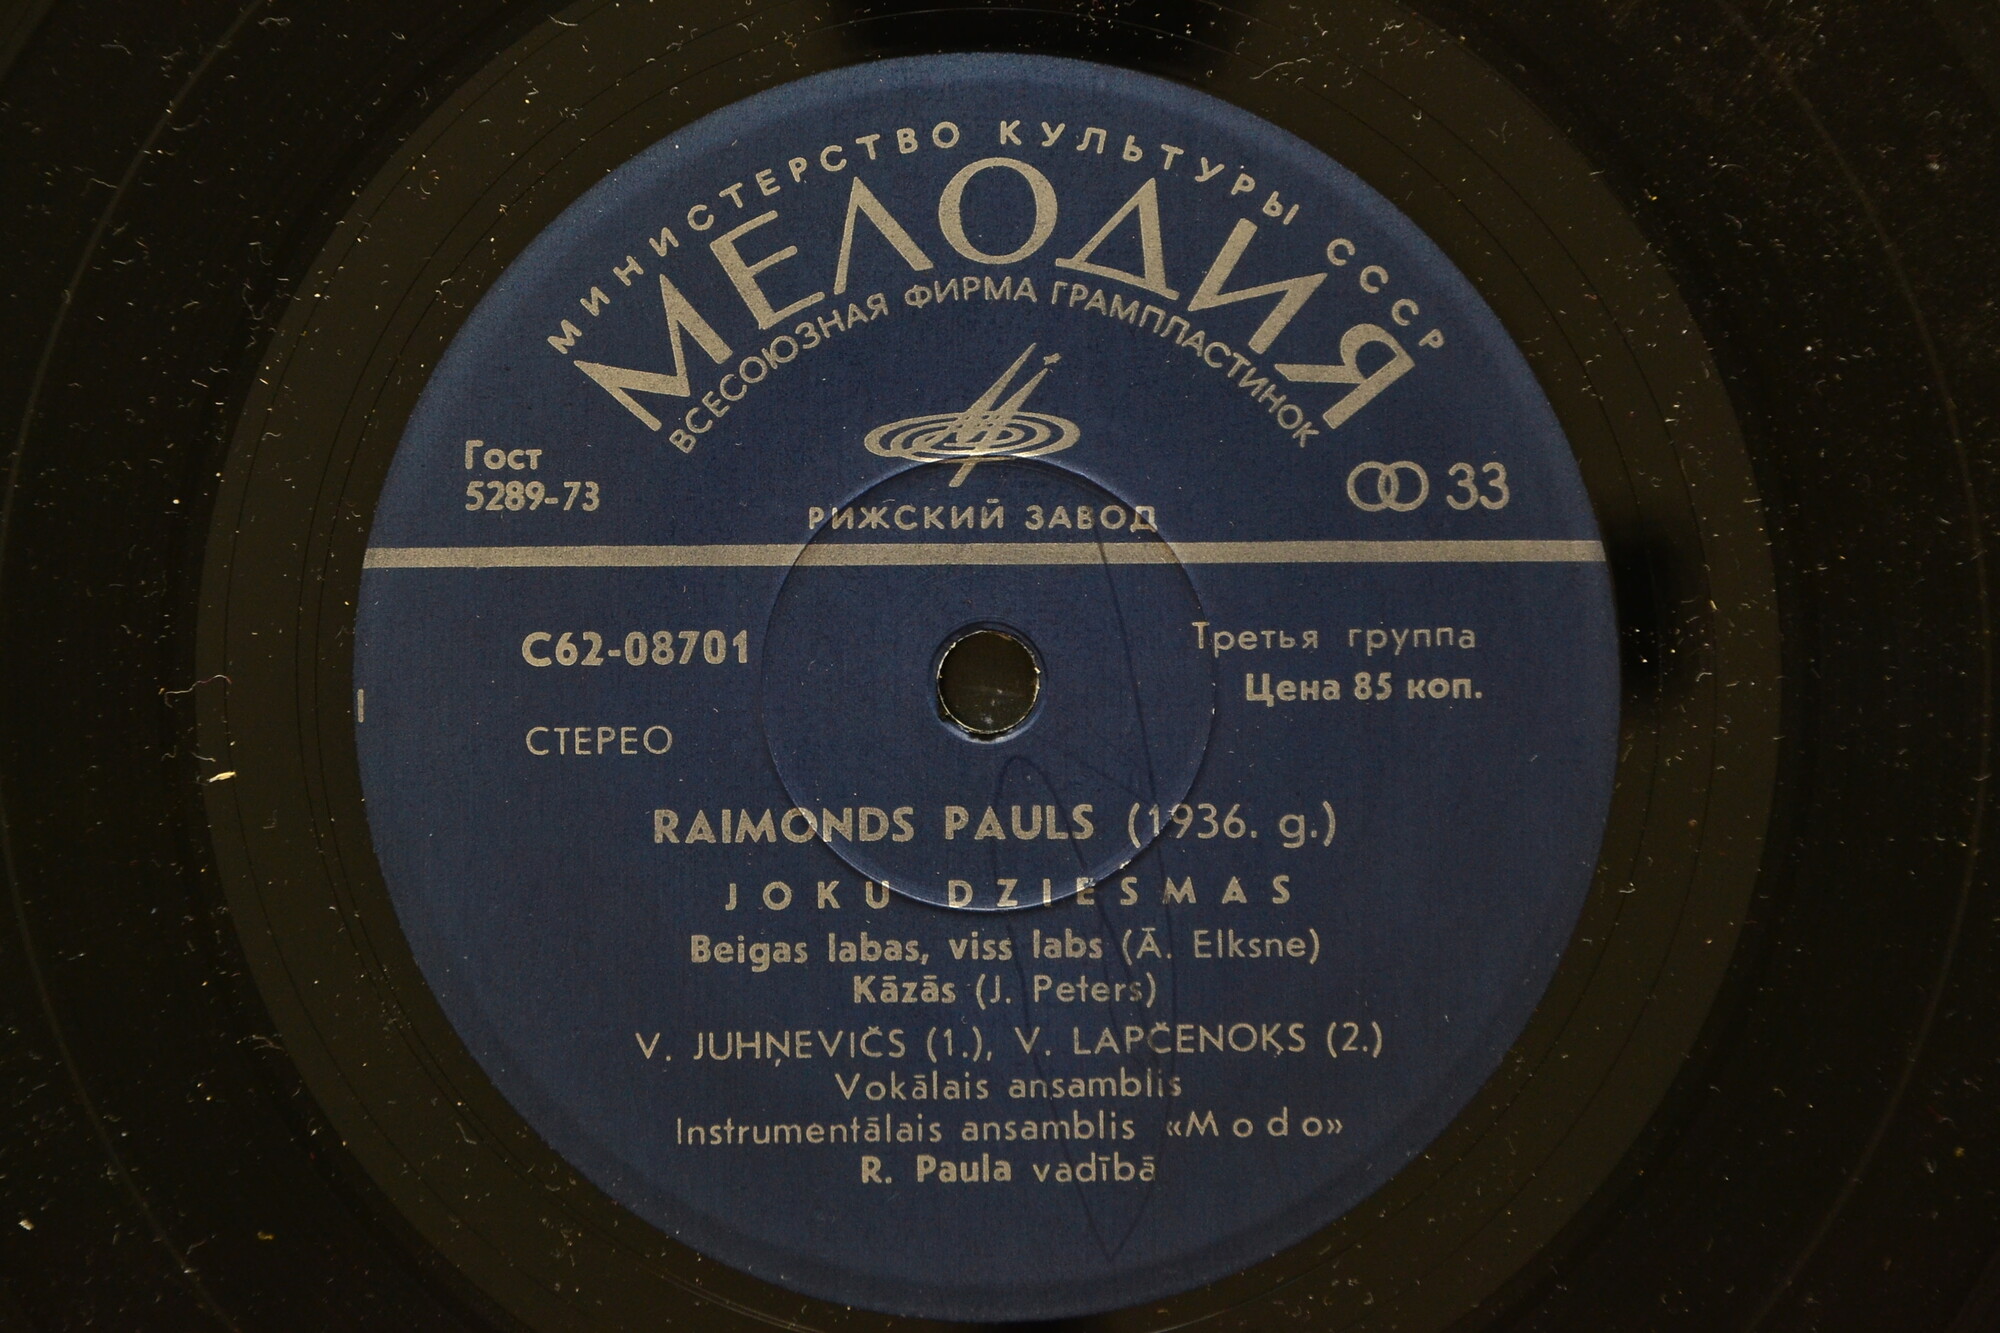 Р. ПАУЛС (1936): Шуточные песни (Joku dziesmas) — на латышском языке